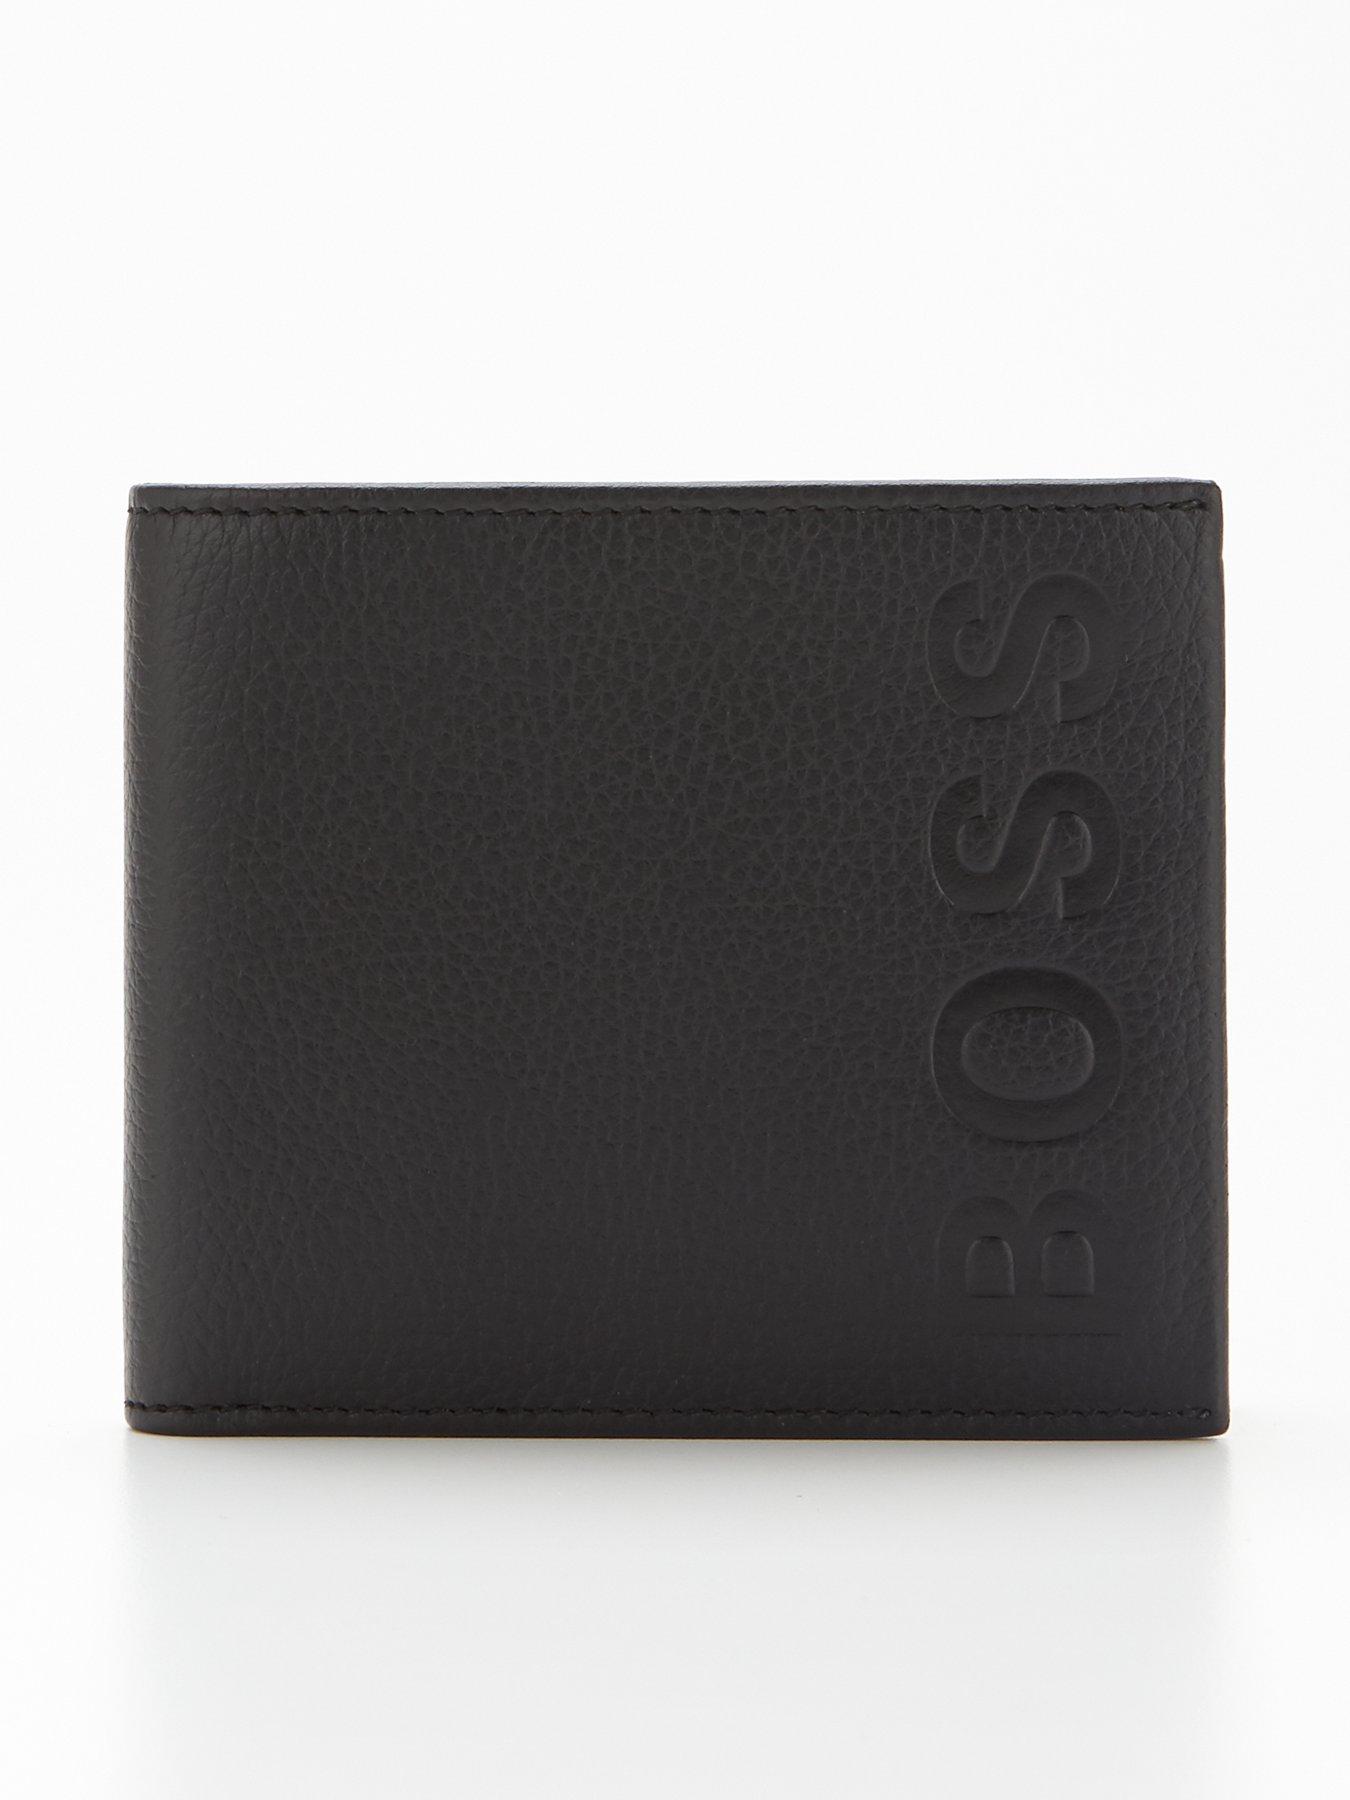 Men Wallet & Credit Card Holder Gift Set - Black